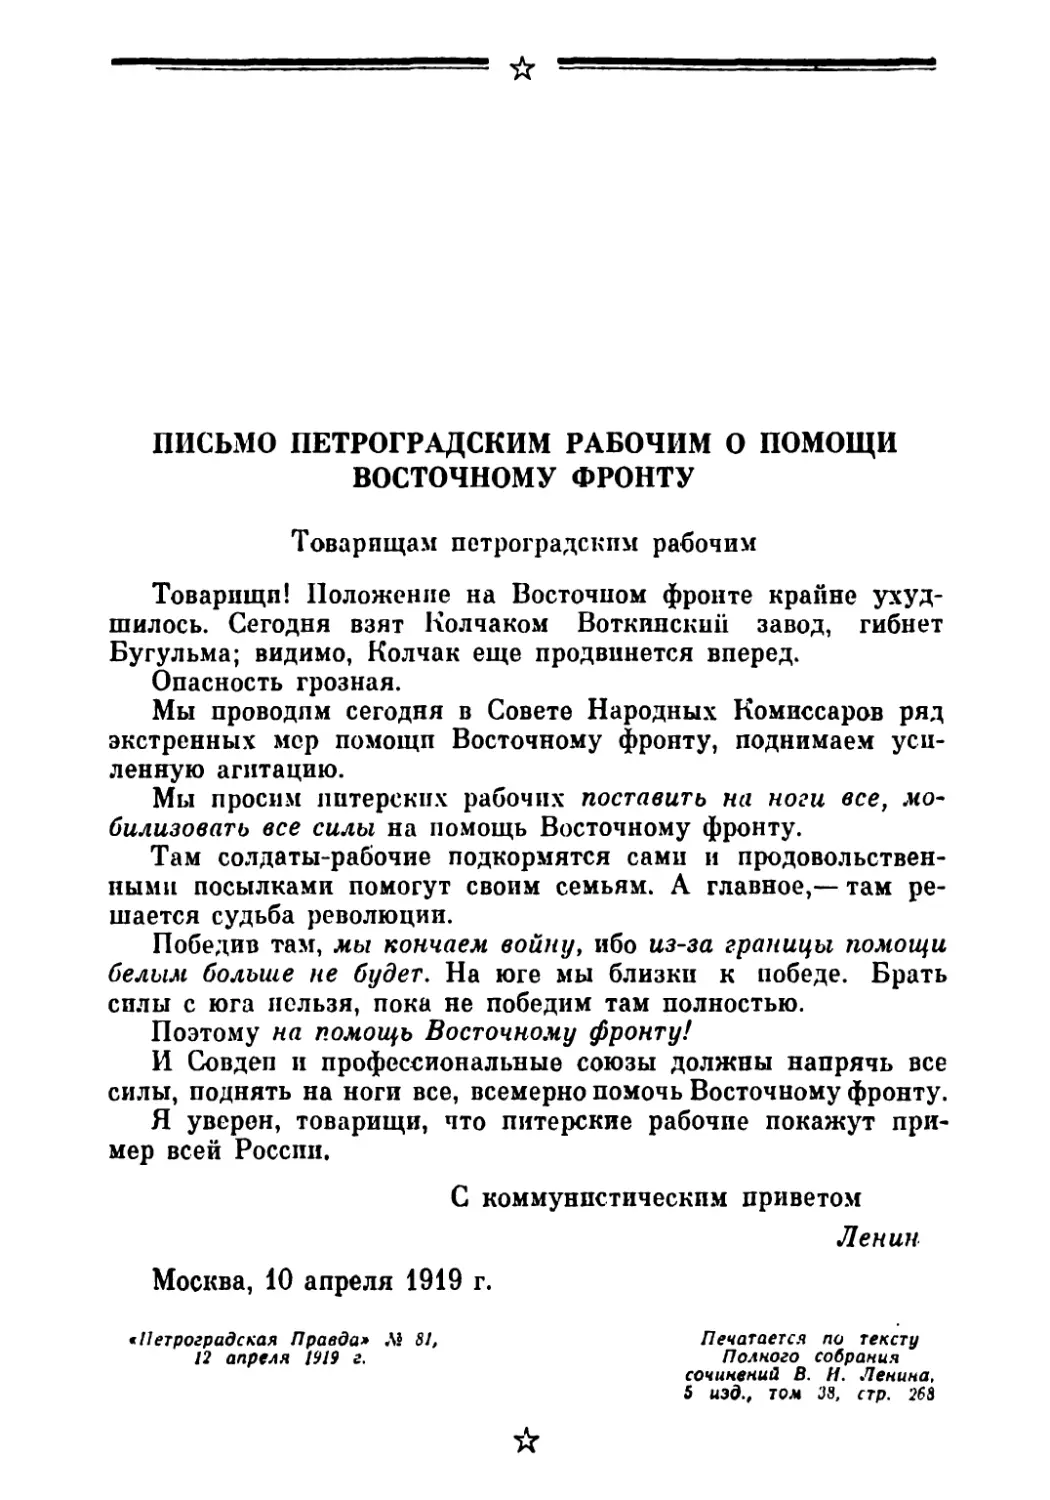 Письмо петроградским рабочим о помощи Восточному фронту